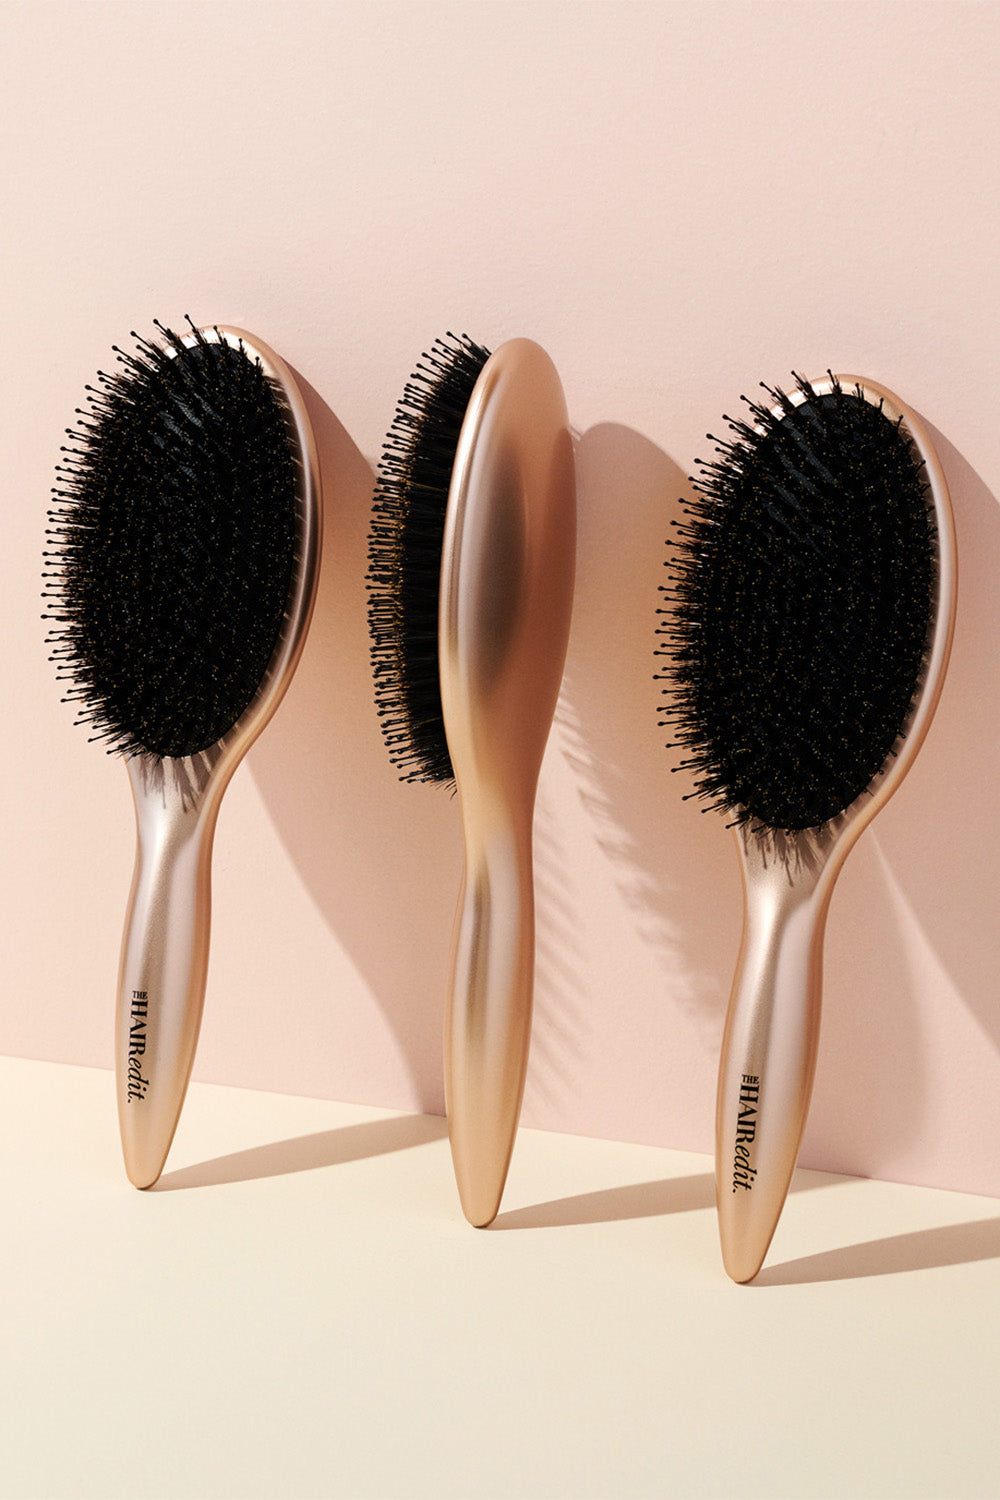 Travel Size Boar Bristle Hair Brush – The Hair Edit